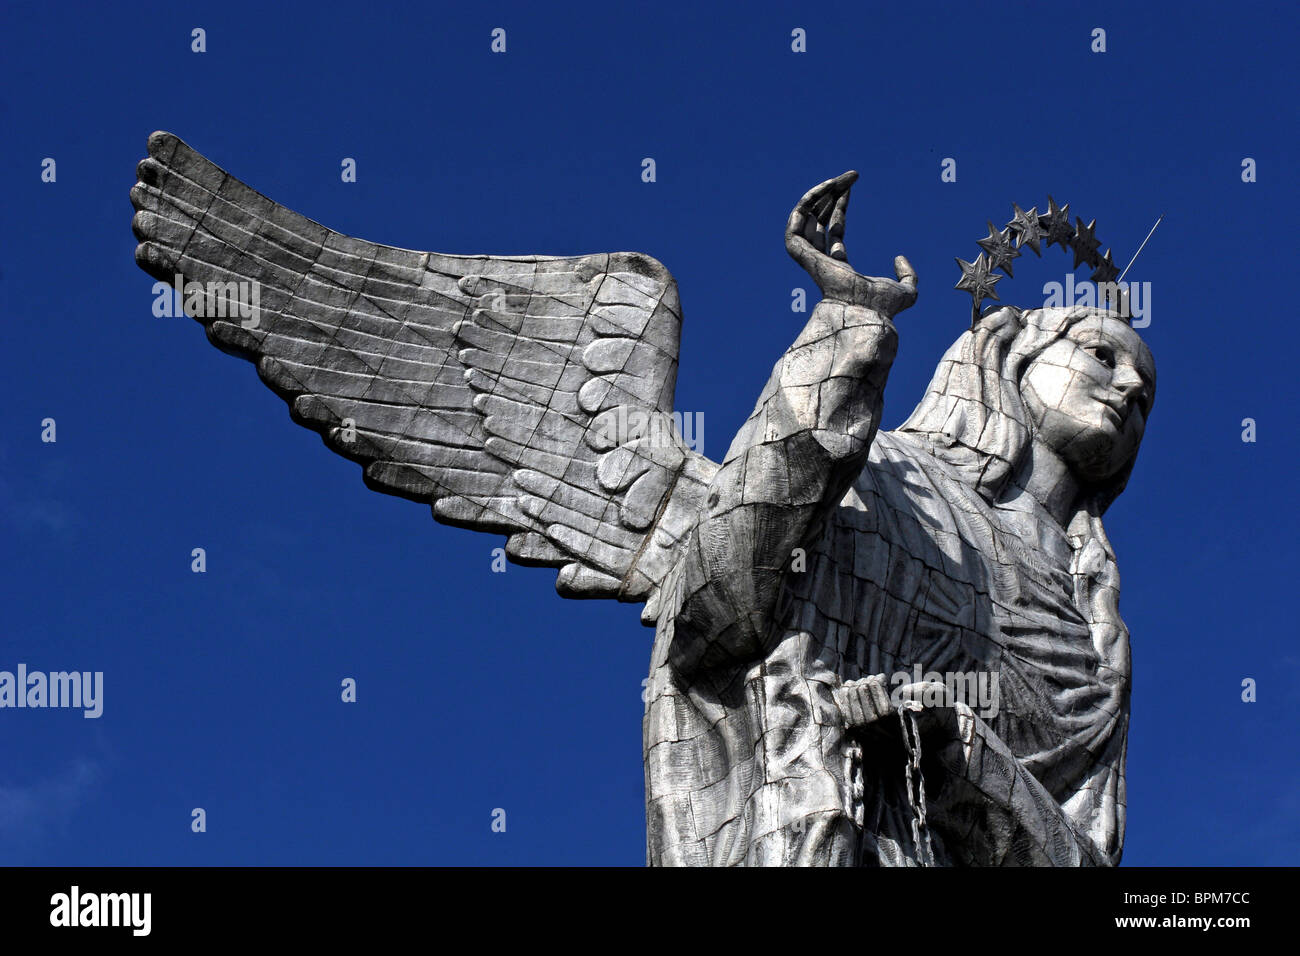 Ecuador, Quito. The Virgin of Panecillo watches over the capitol of Ecuador against a blue sky. Stock Photo